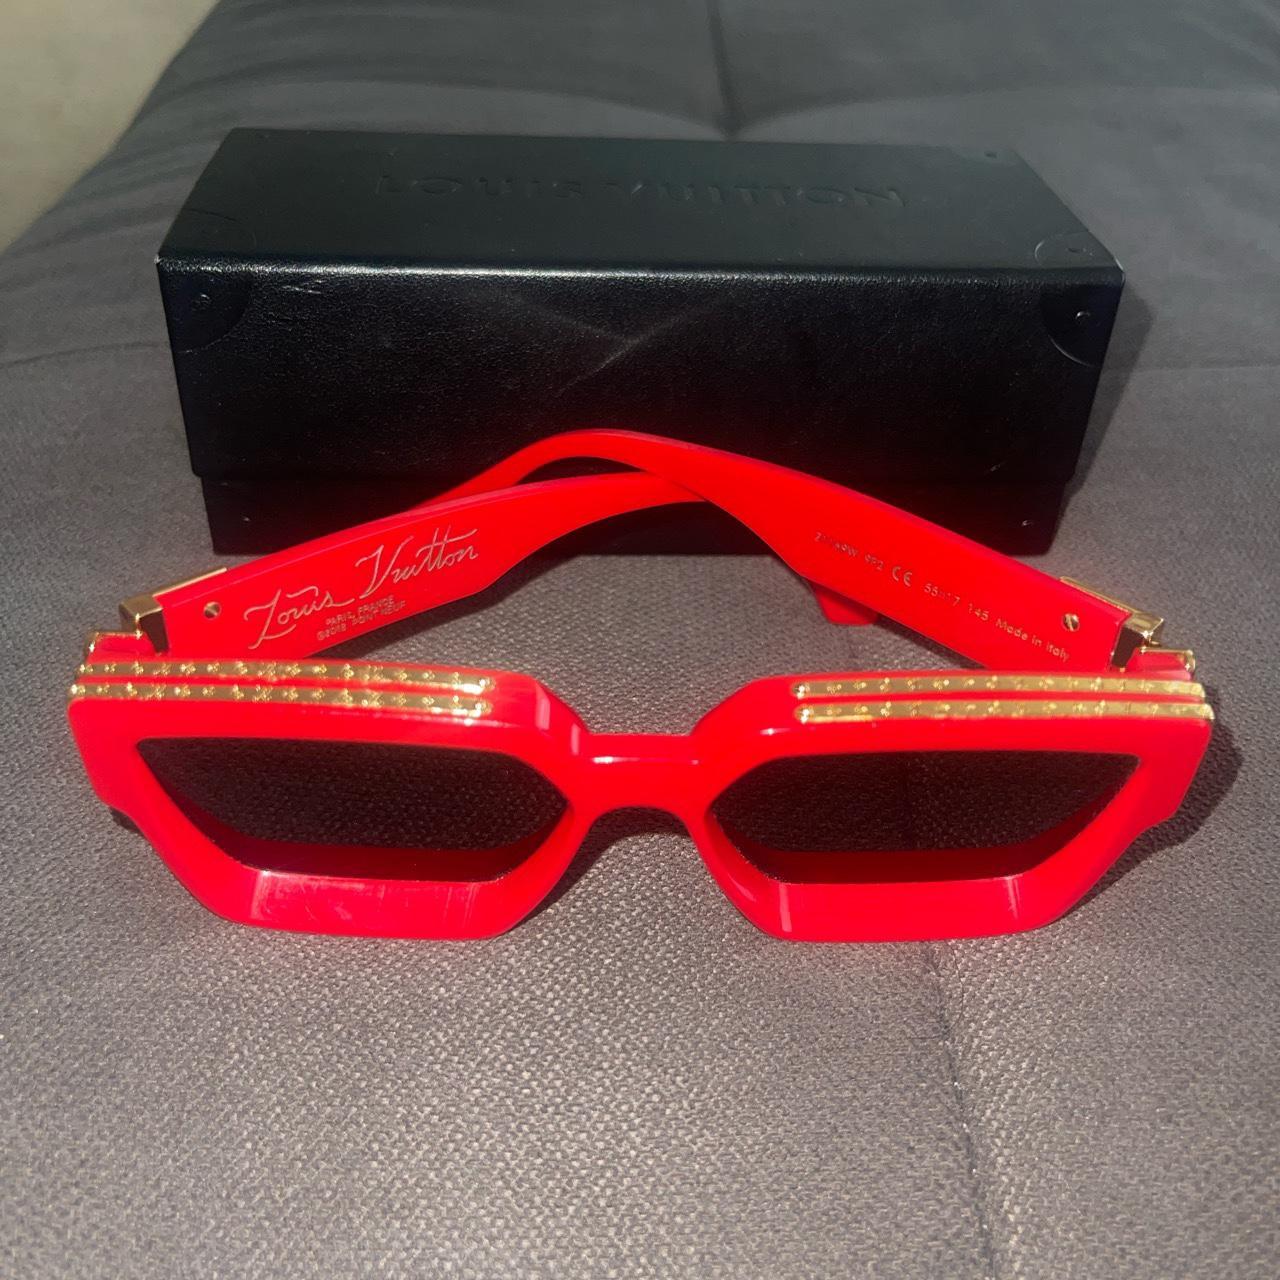 SOLD OUT Louis Vuitton 1.1 Millionaire Sunglasses - Depop